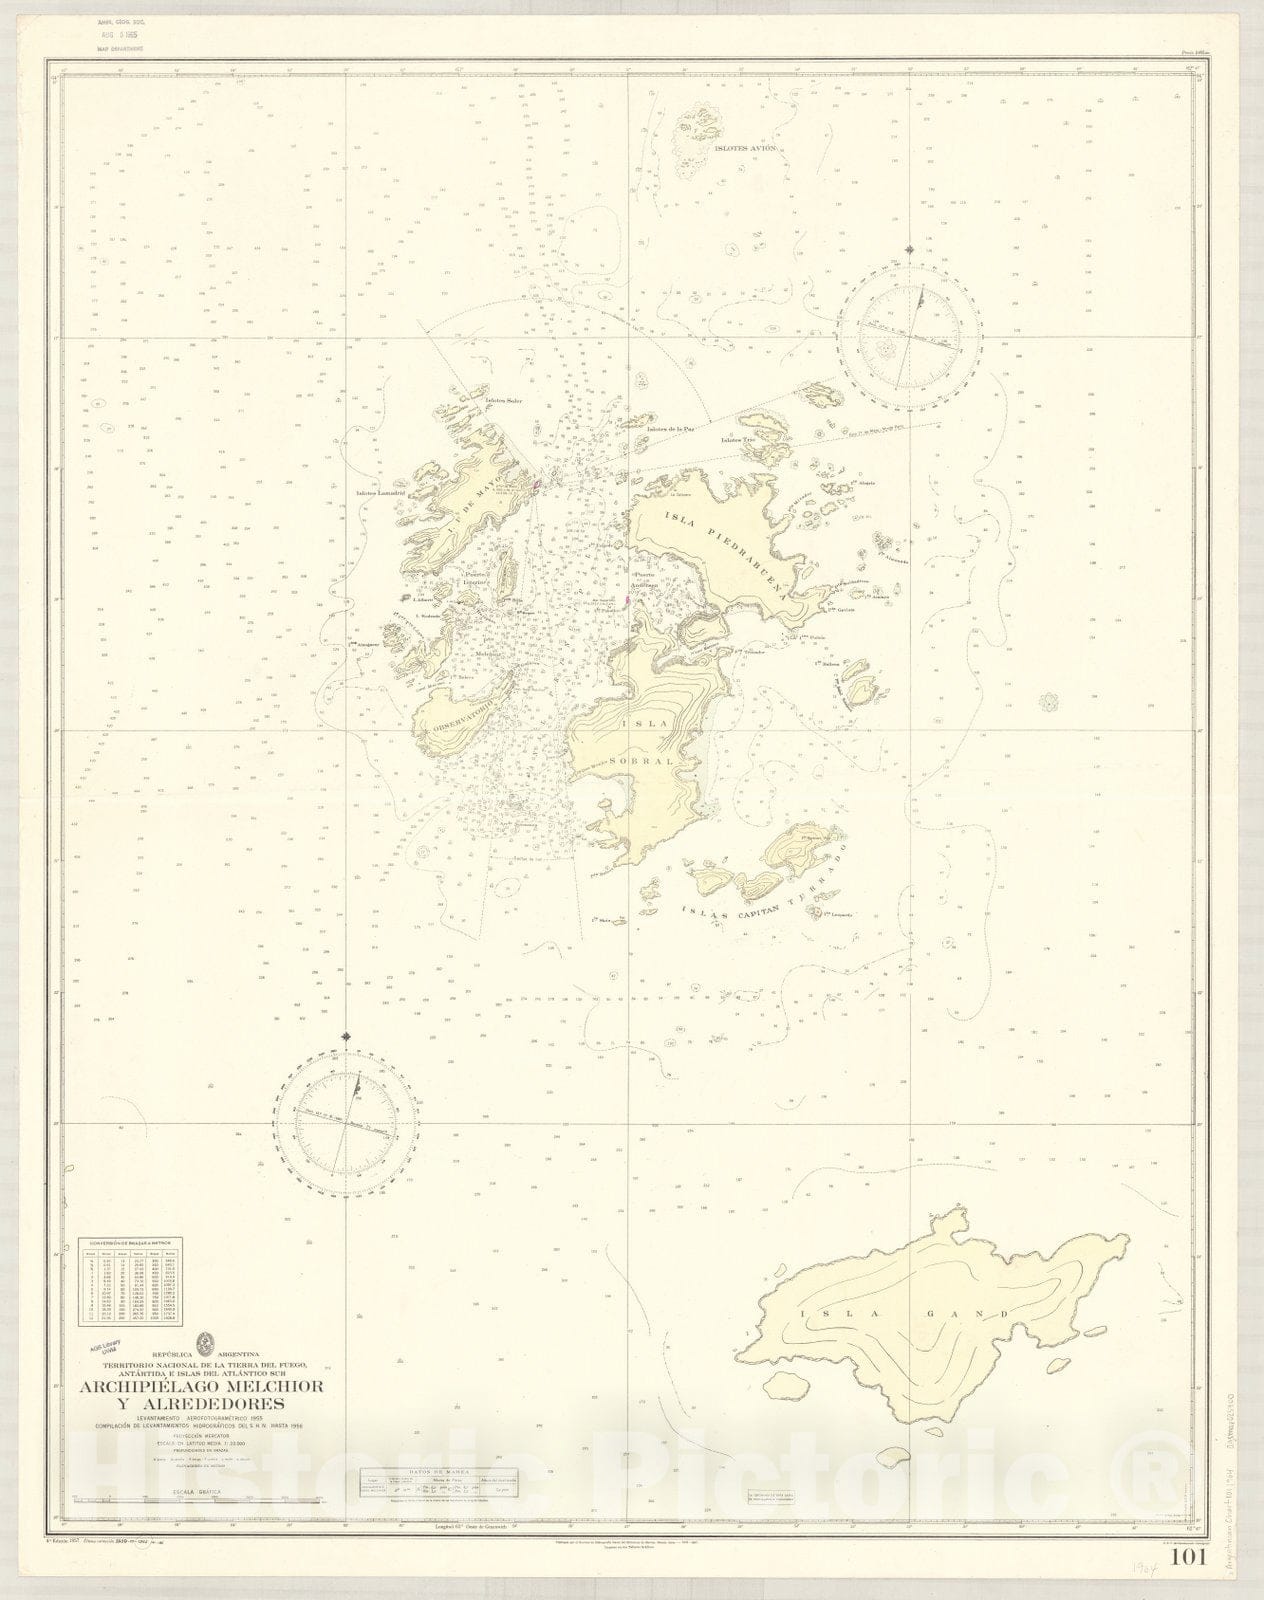 Map : Melchior Islands, Antarctica 1964, Republica Argentina, Territorio Nacional de la Tierra del Fuego, Antartida e Islas del Atlantico Sur, Archipielago